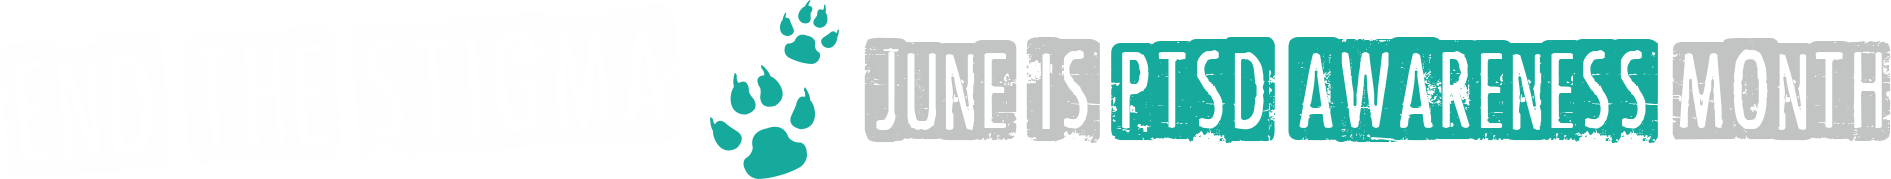 June - PTSD Awareness Month